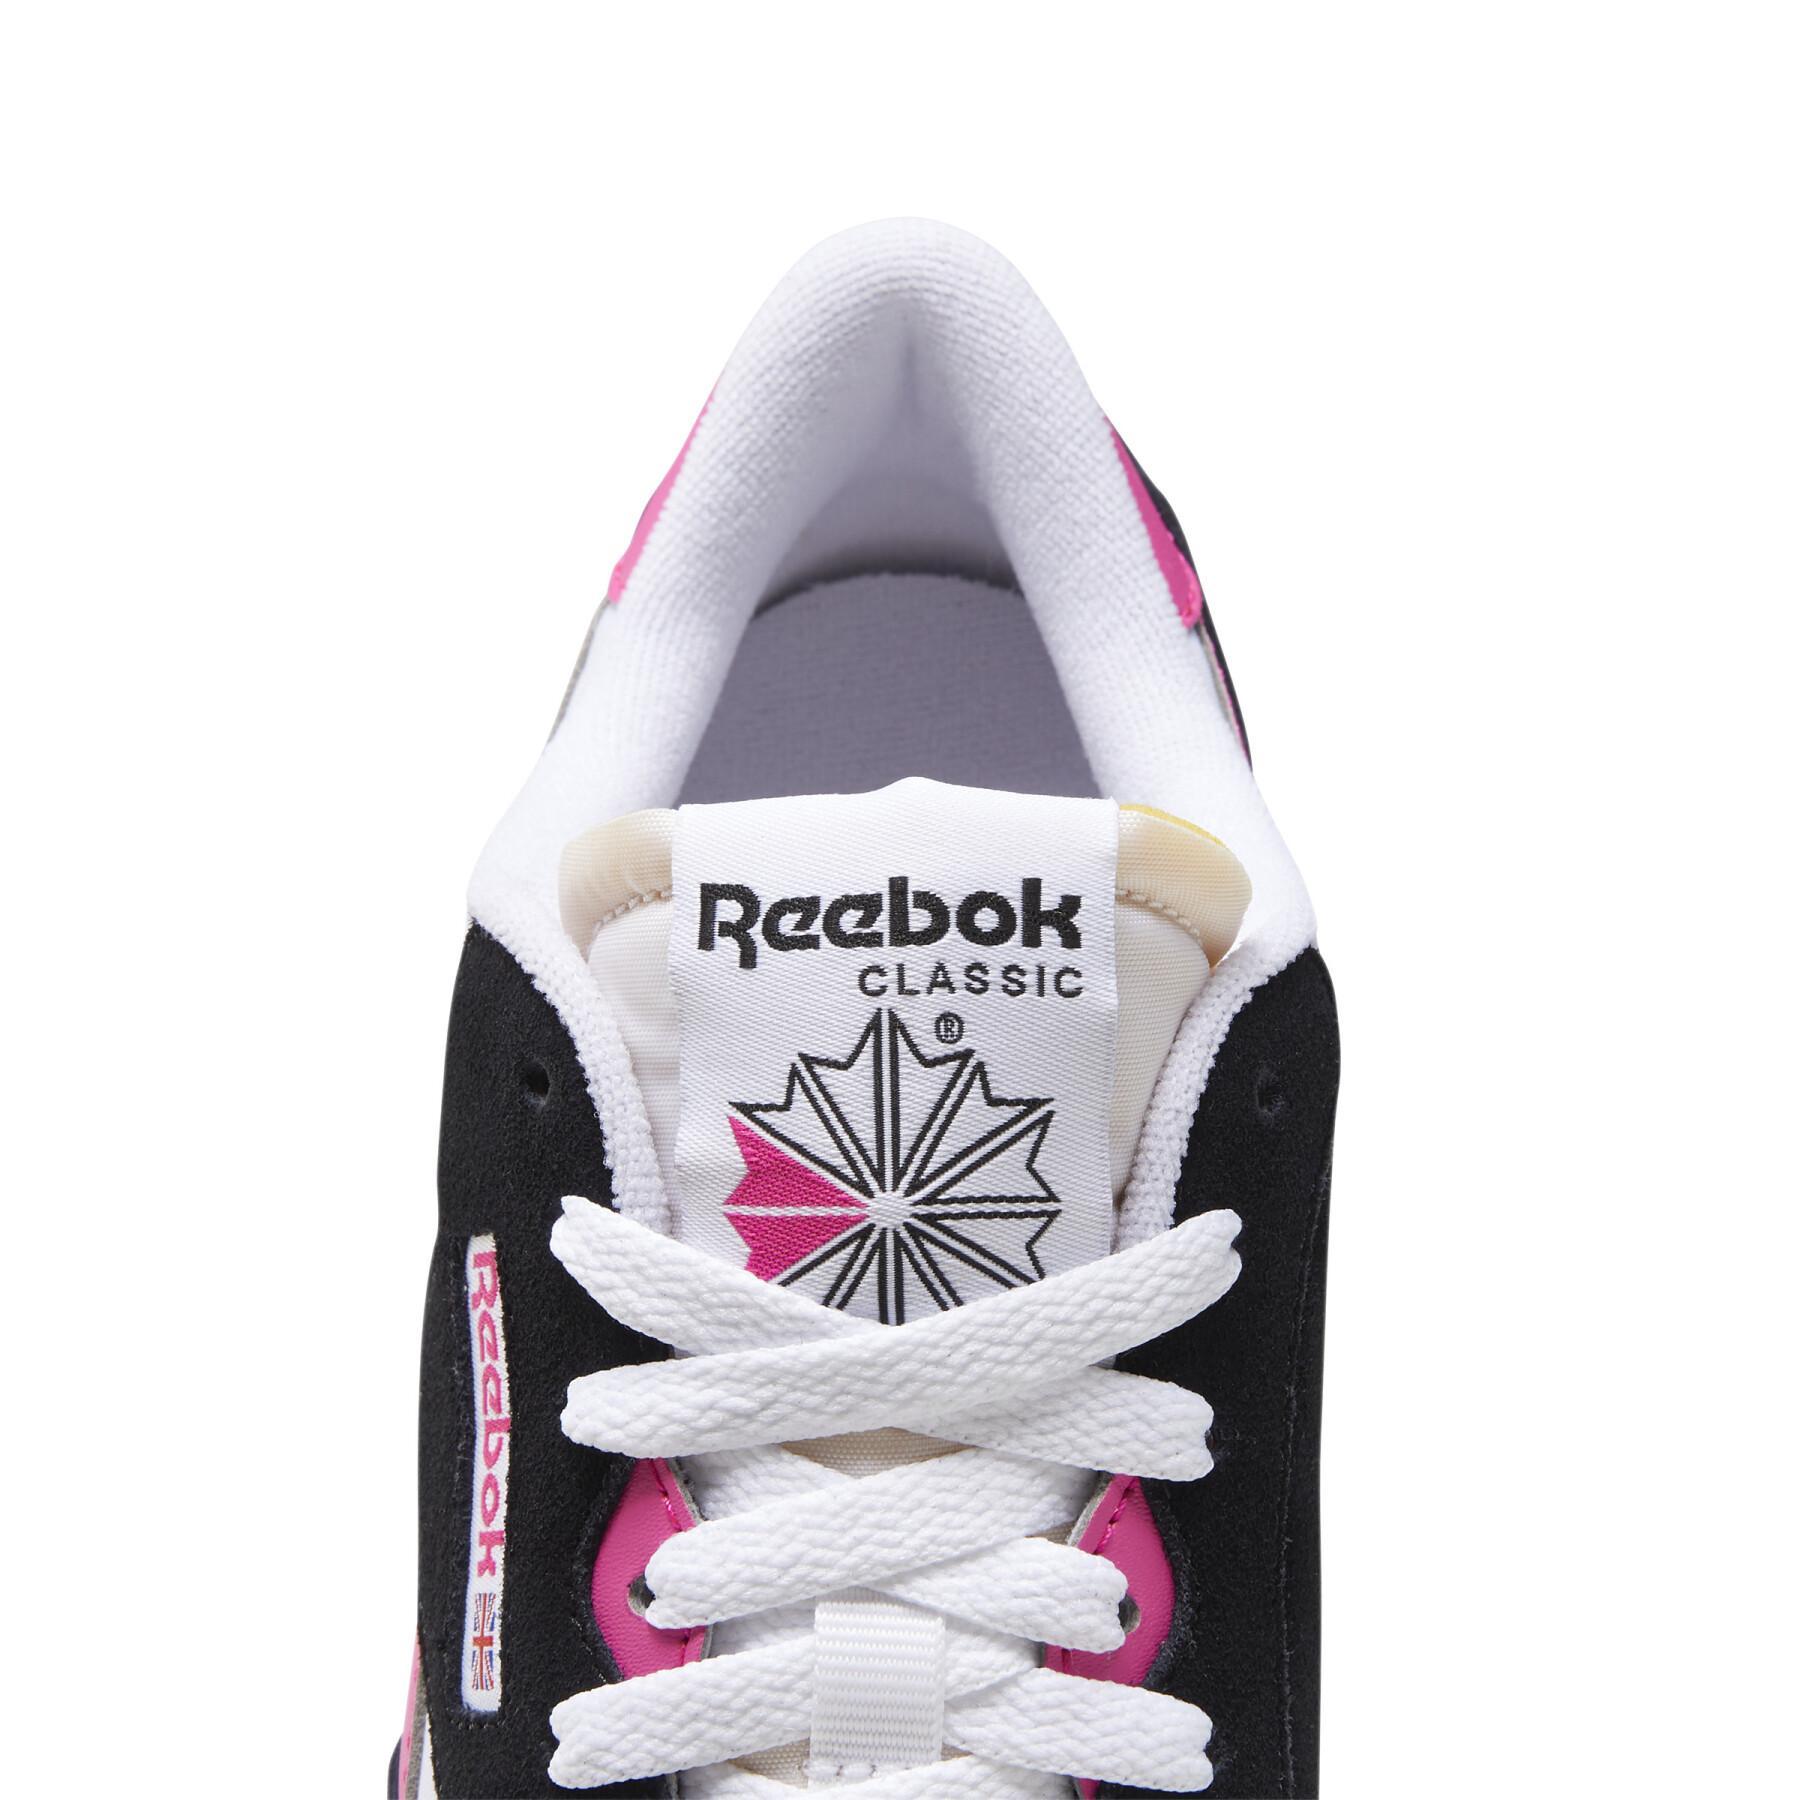 Reebok CL Nylon women's sneakers